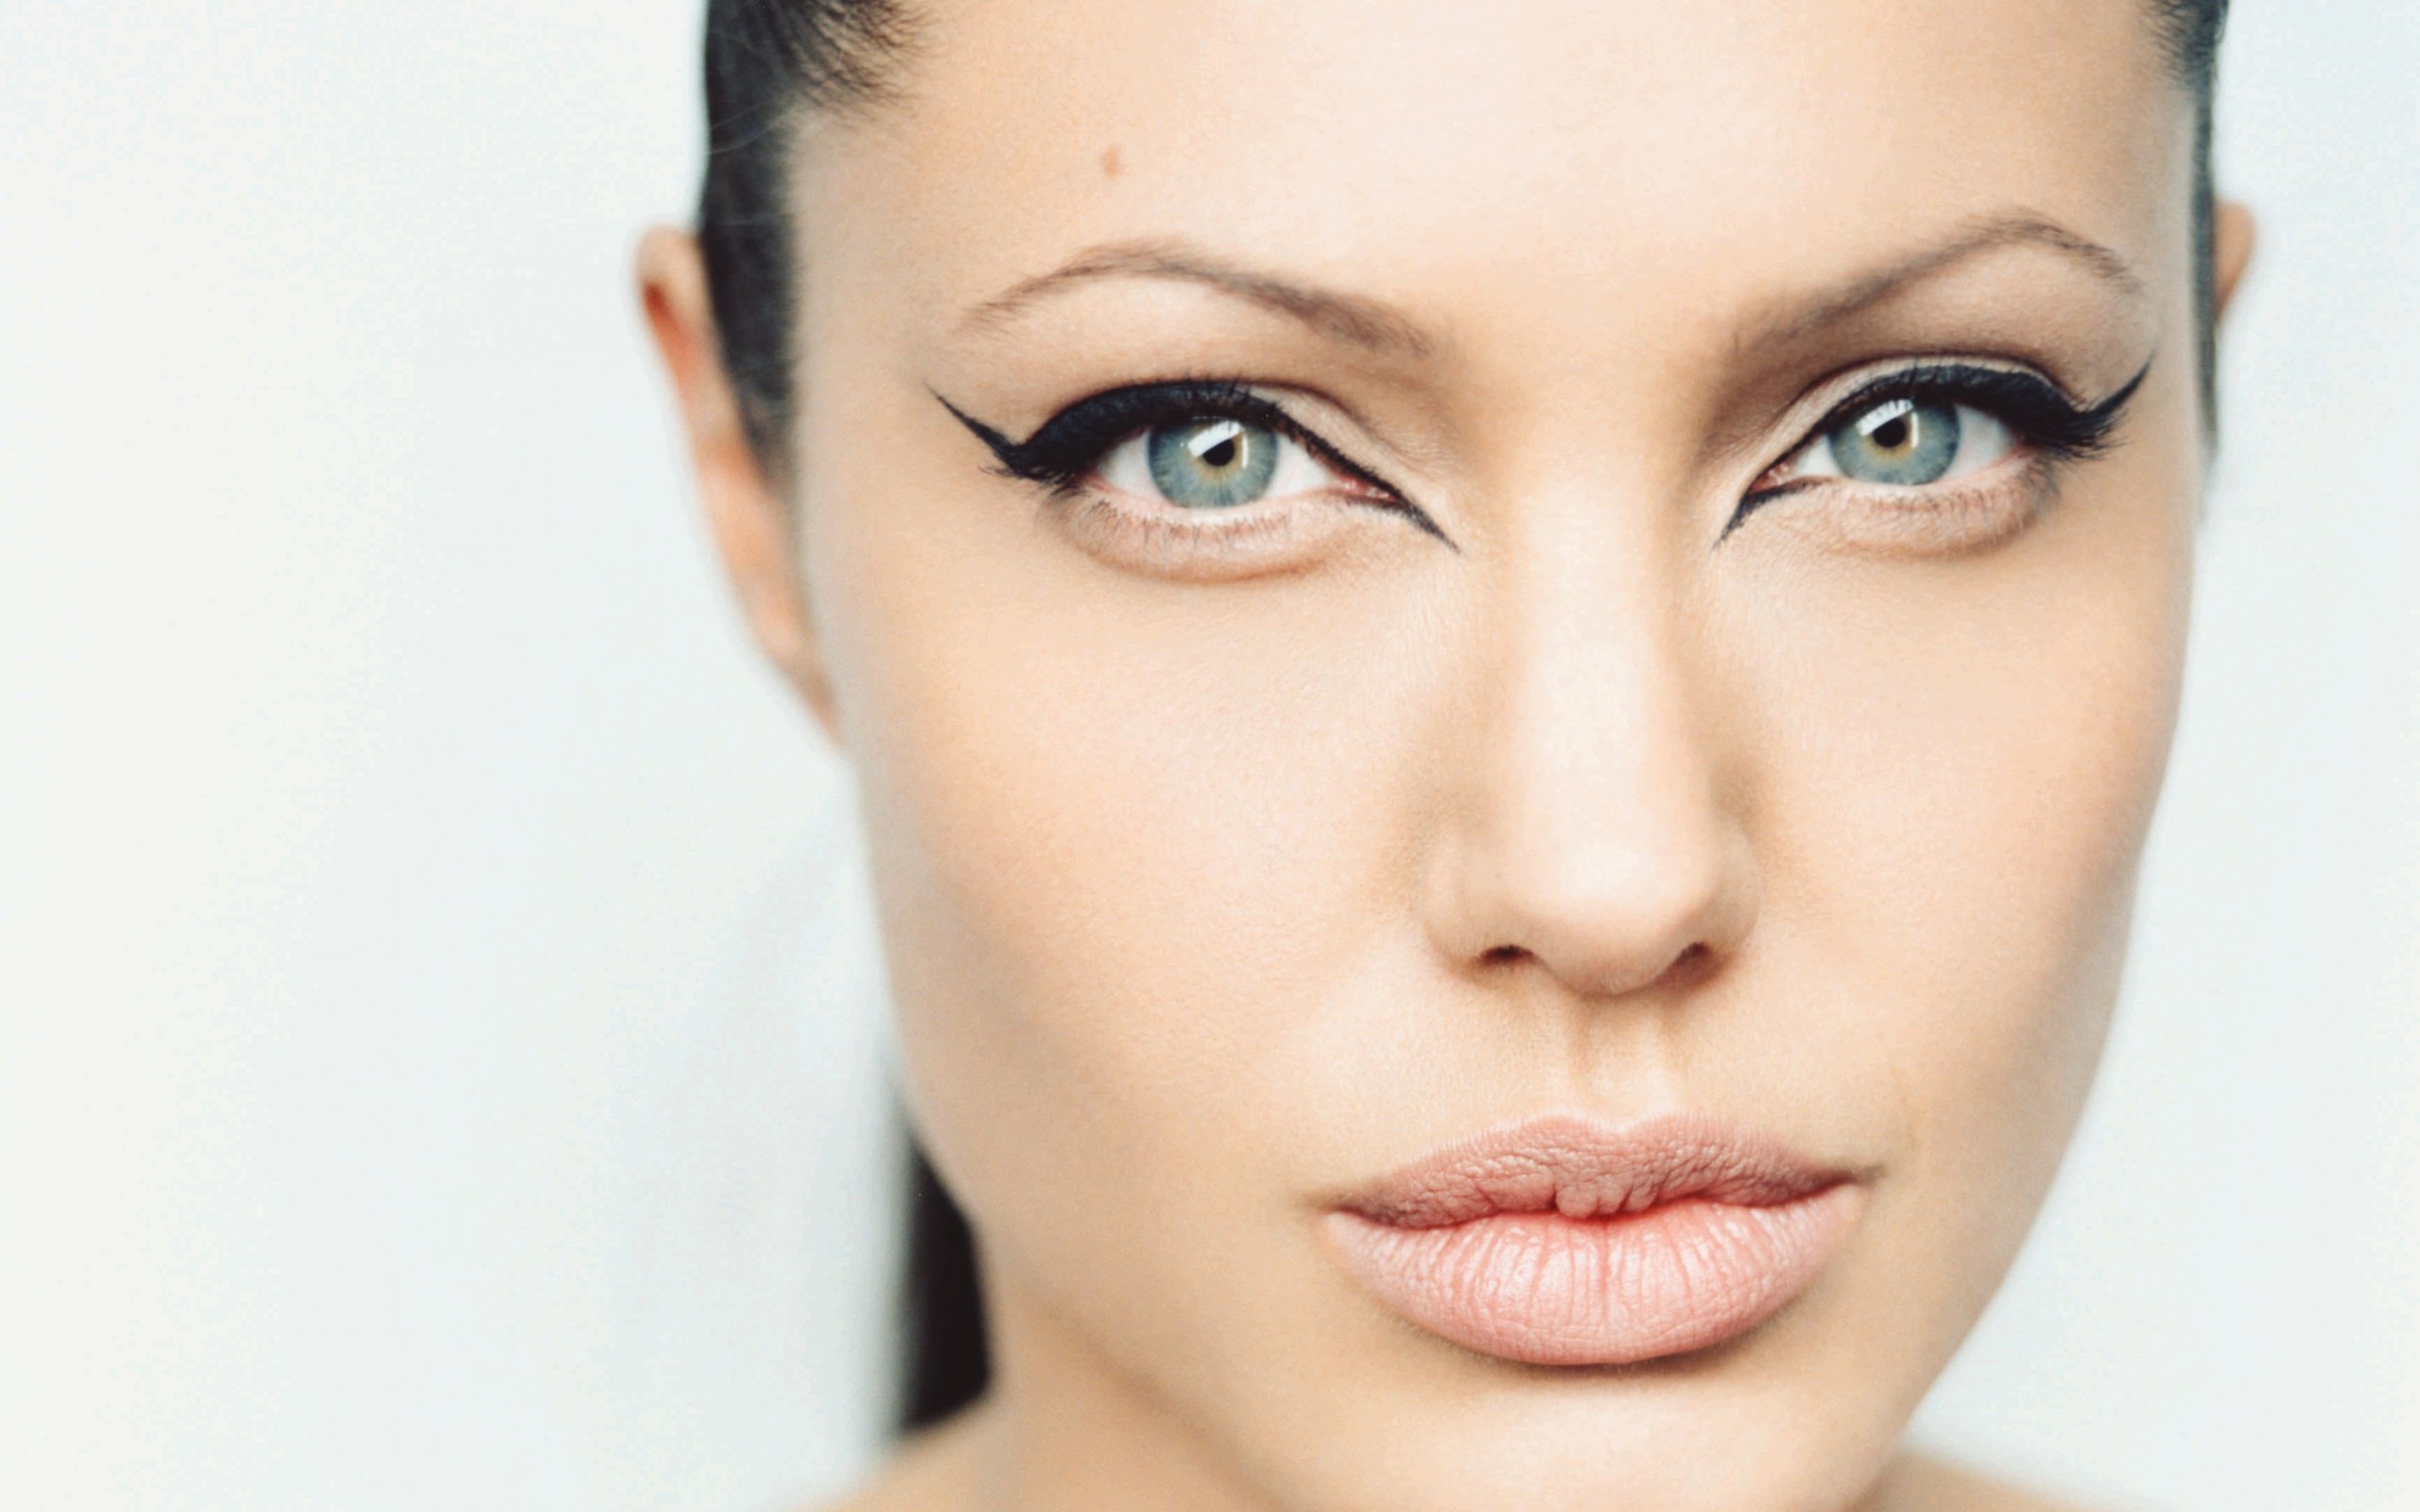 Angelina Jolie Wallpaper for Desktop 2560x1600